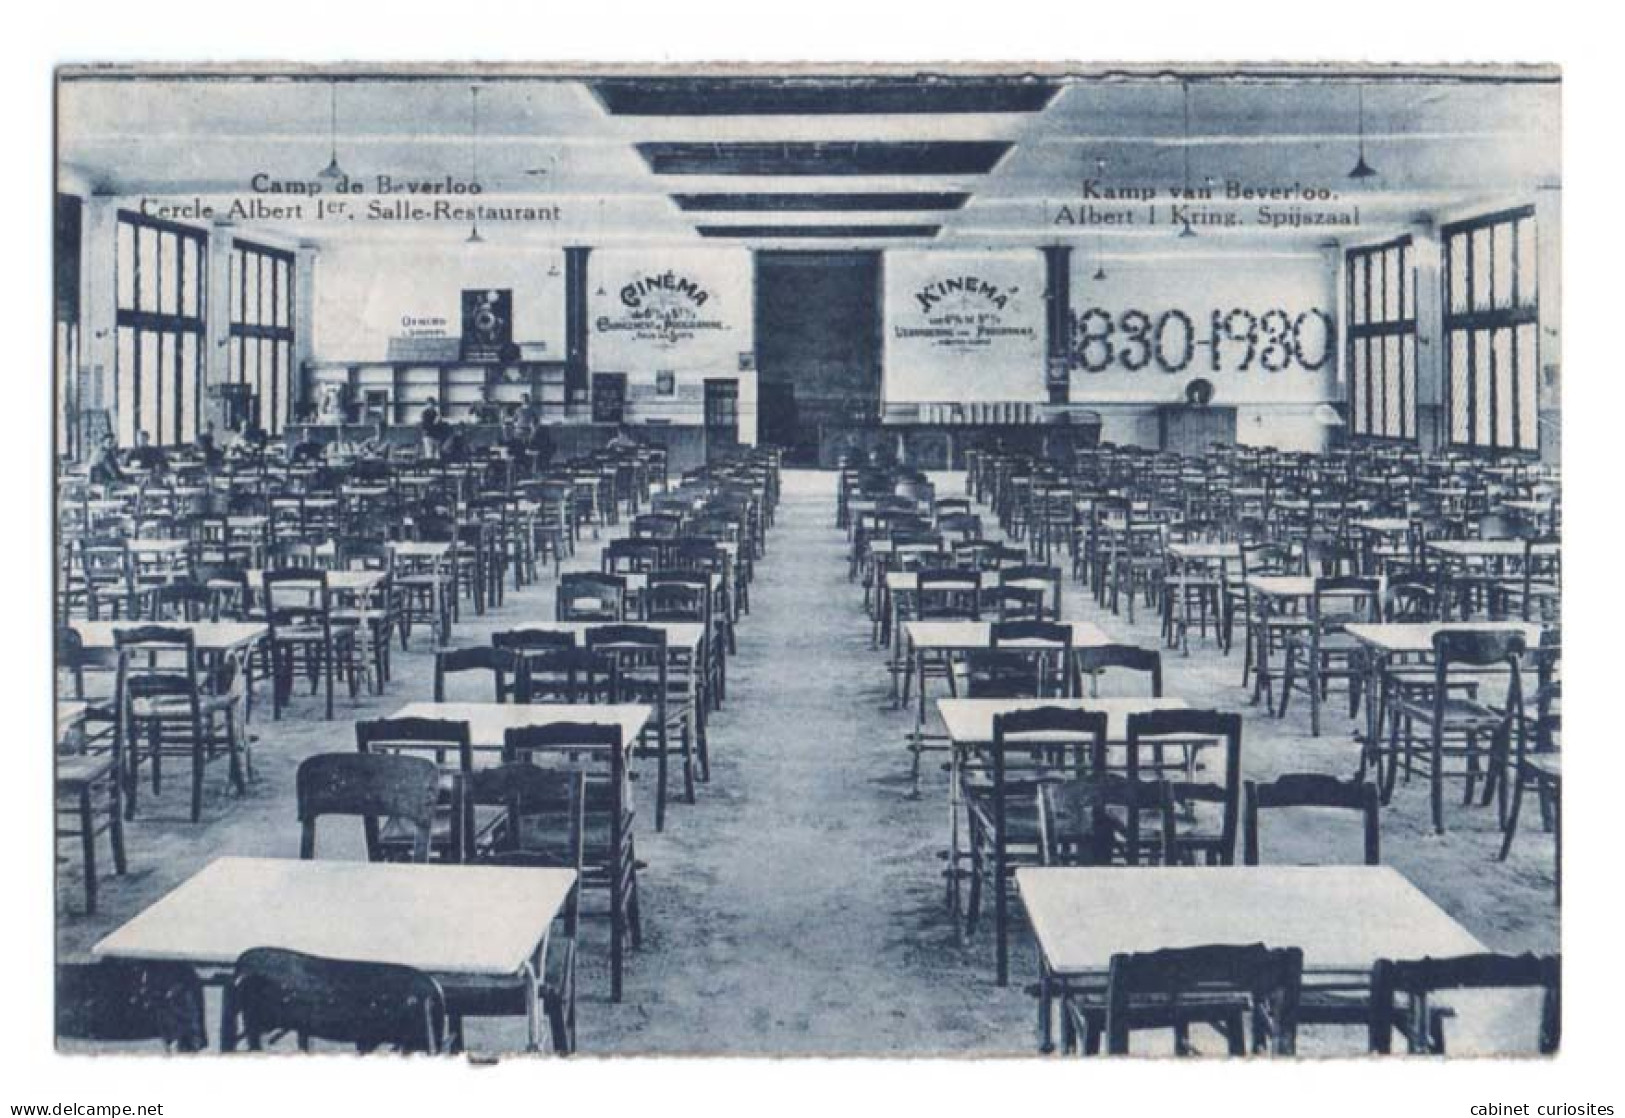 CAMP DE BEVERLOO - Cercle Albert 1er - Salle Restaurant - Kamp Van Beverloo - Albert 1 Kring - Spijszaal - 1830-1930 - Leopoldsburg (Beverloo Camp)